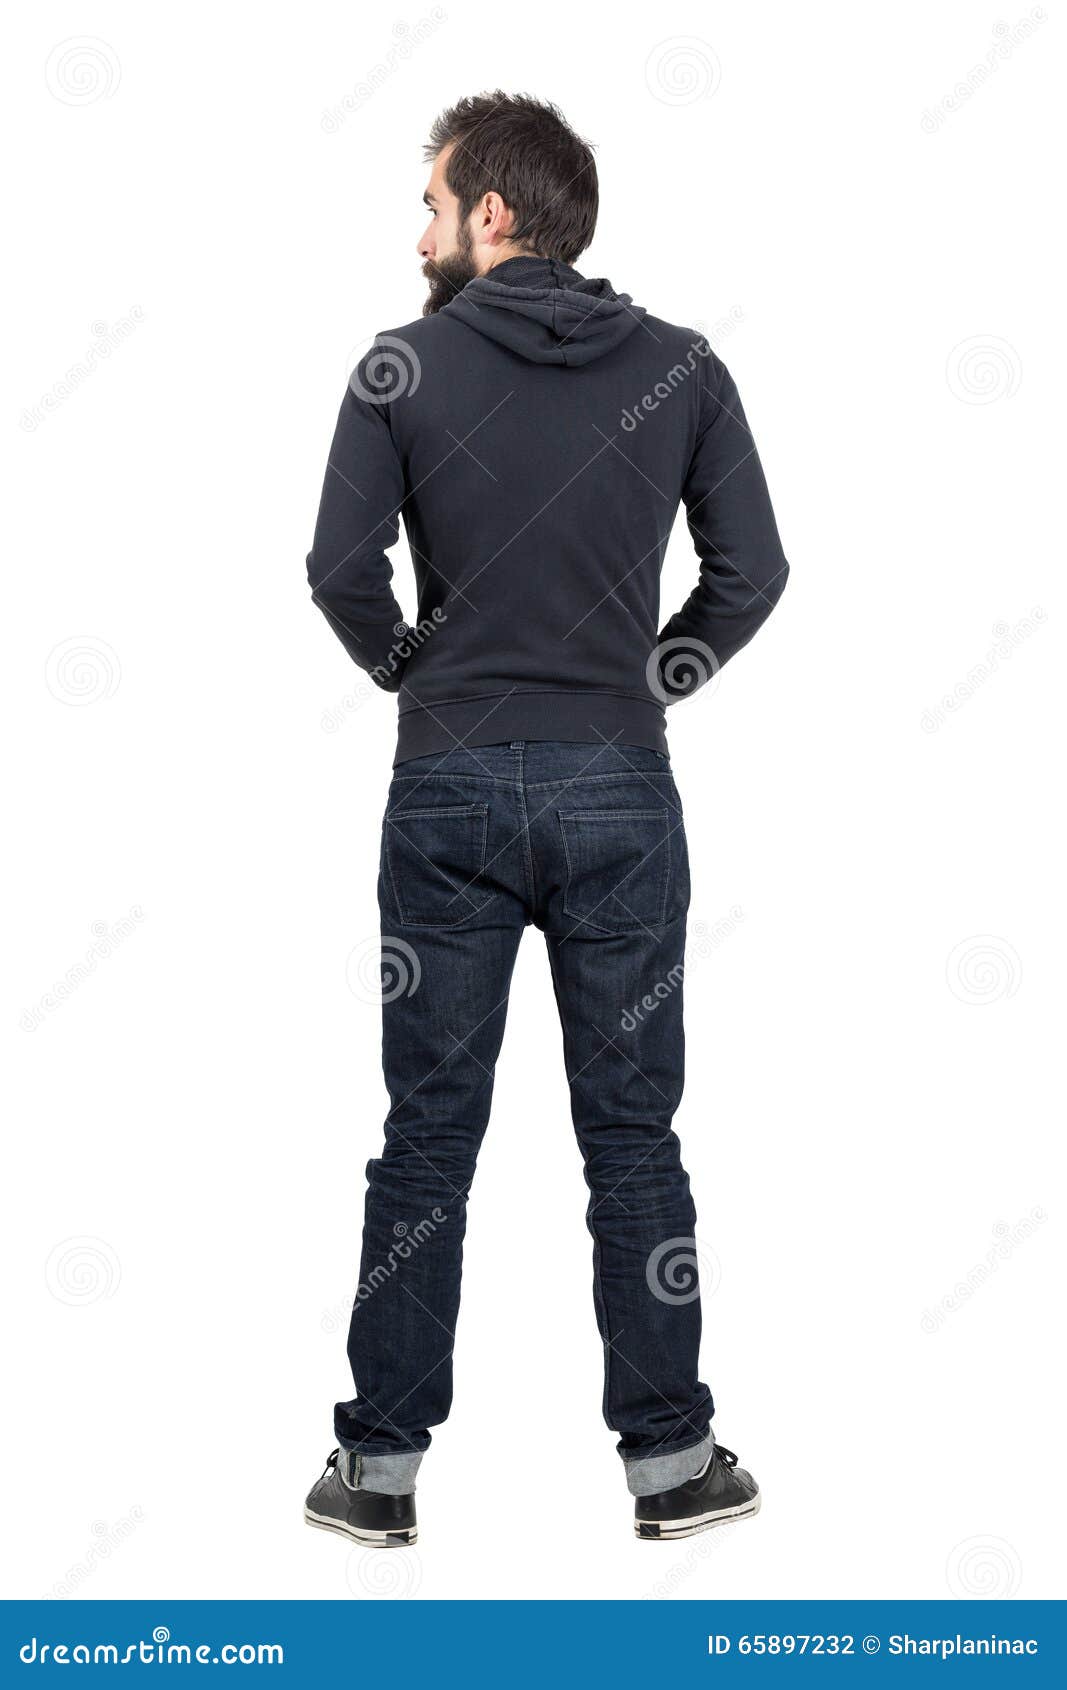 Sudadera negra con capucha en hombre aislado